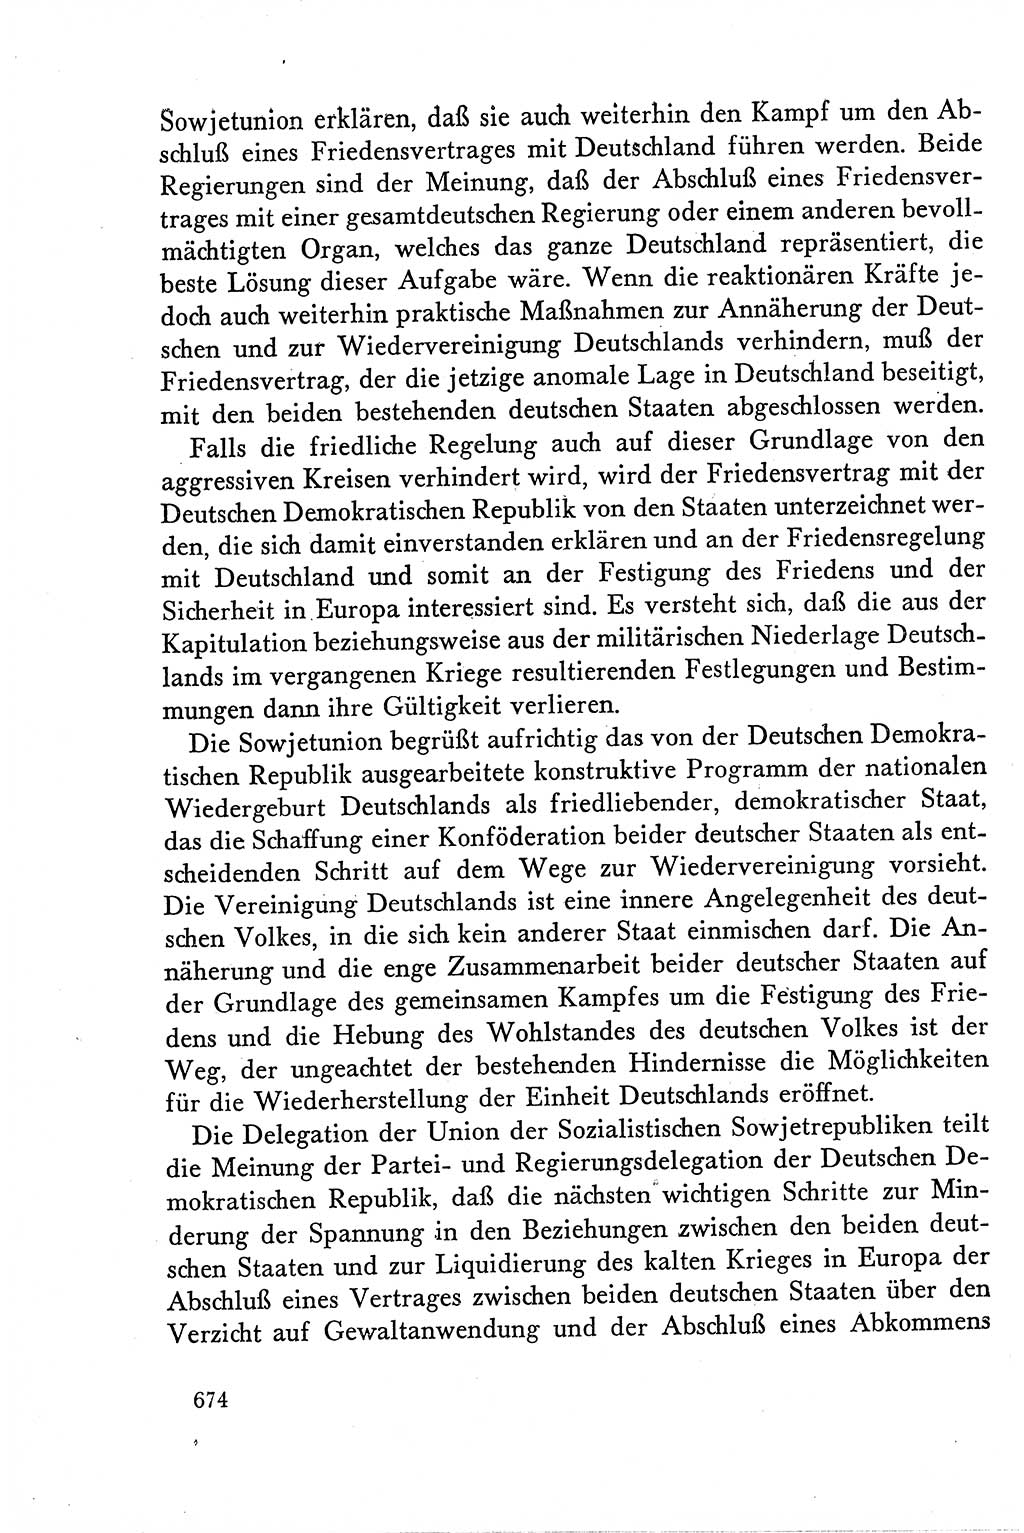 Dokumente der Sozialistischen Einheitspartei Deutschlands (SED) [Deutsche Demokratische Republik (DDR)] 1958-1959, Seite 674 (Dok. SED DDR 1958-1959, S. 674)